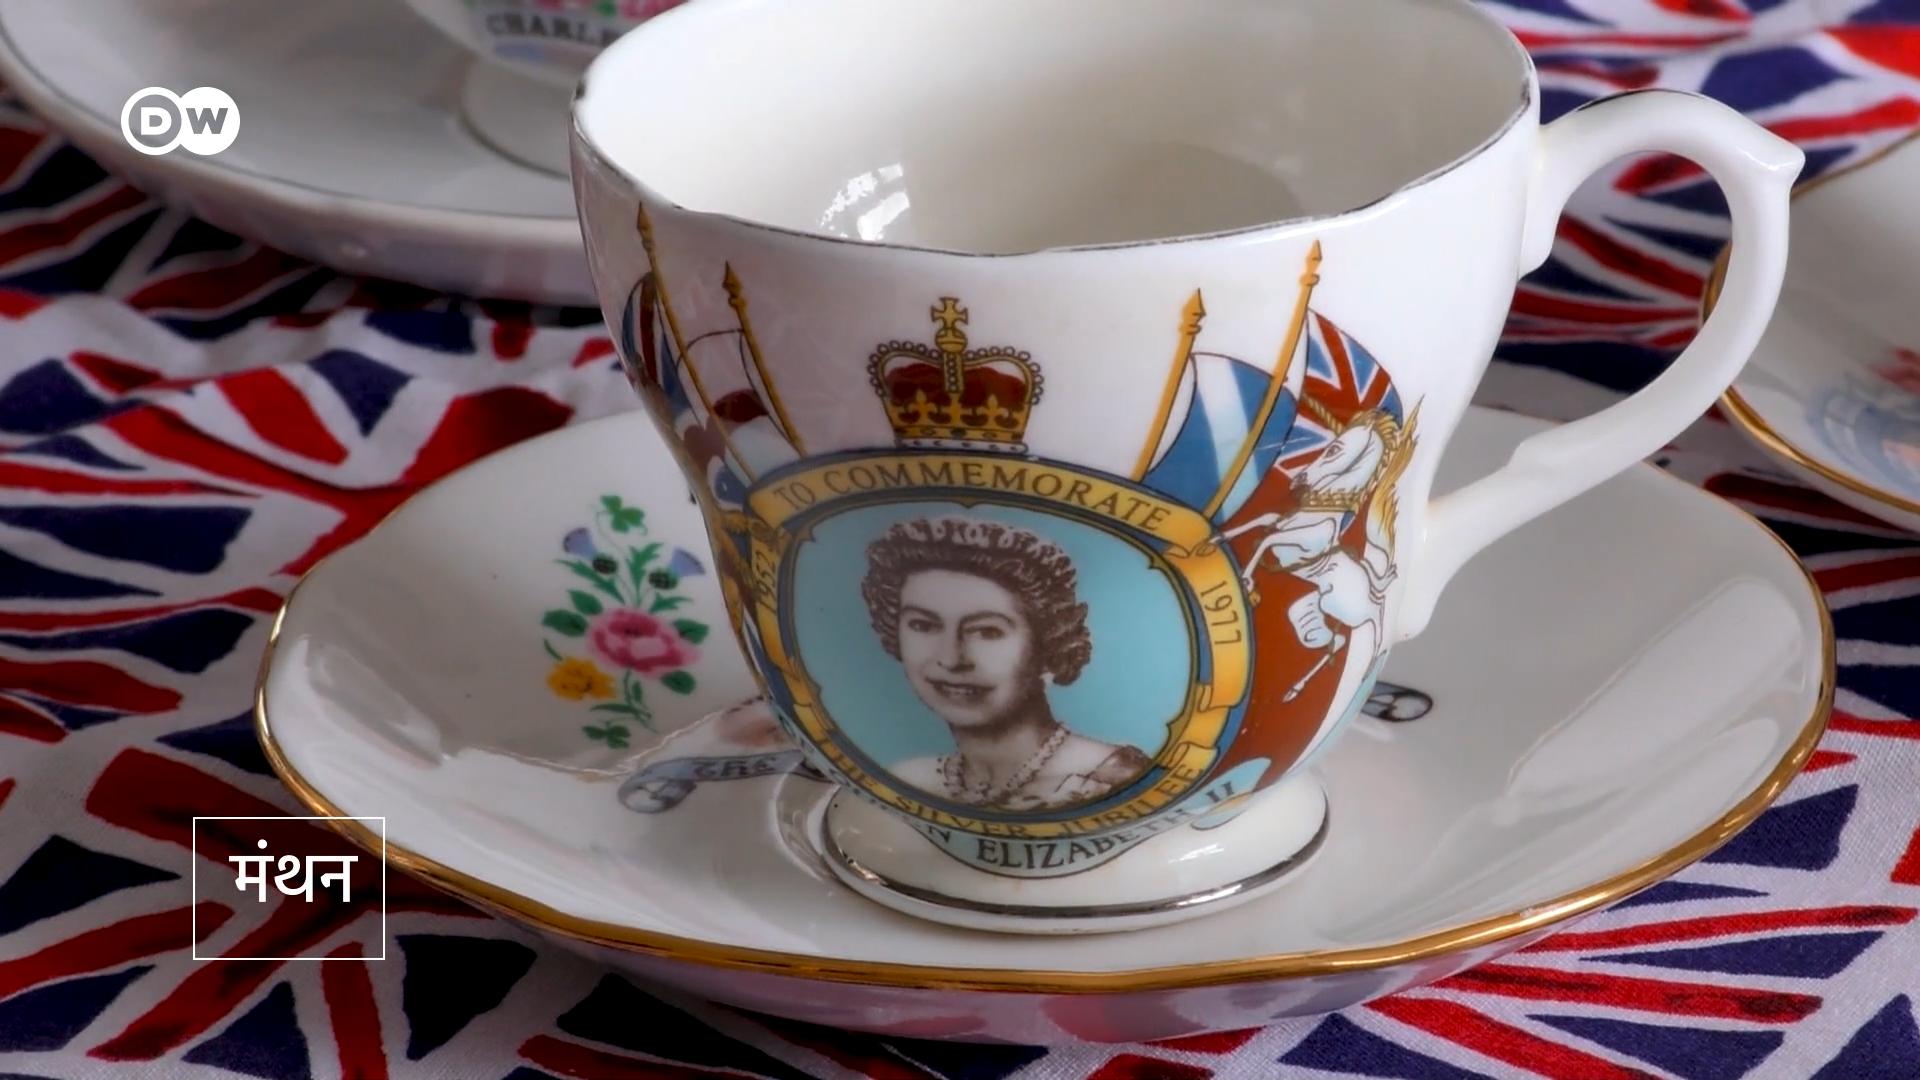 एक महिला कई सालों से हर दिन ब्रिटिश शाही परिवार के साथ बिता रही हैं. उनके पास शाही परिवार से जुड़ा बड़ा खजाना भी है.